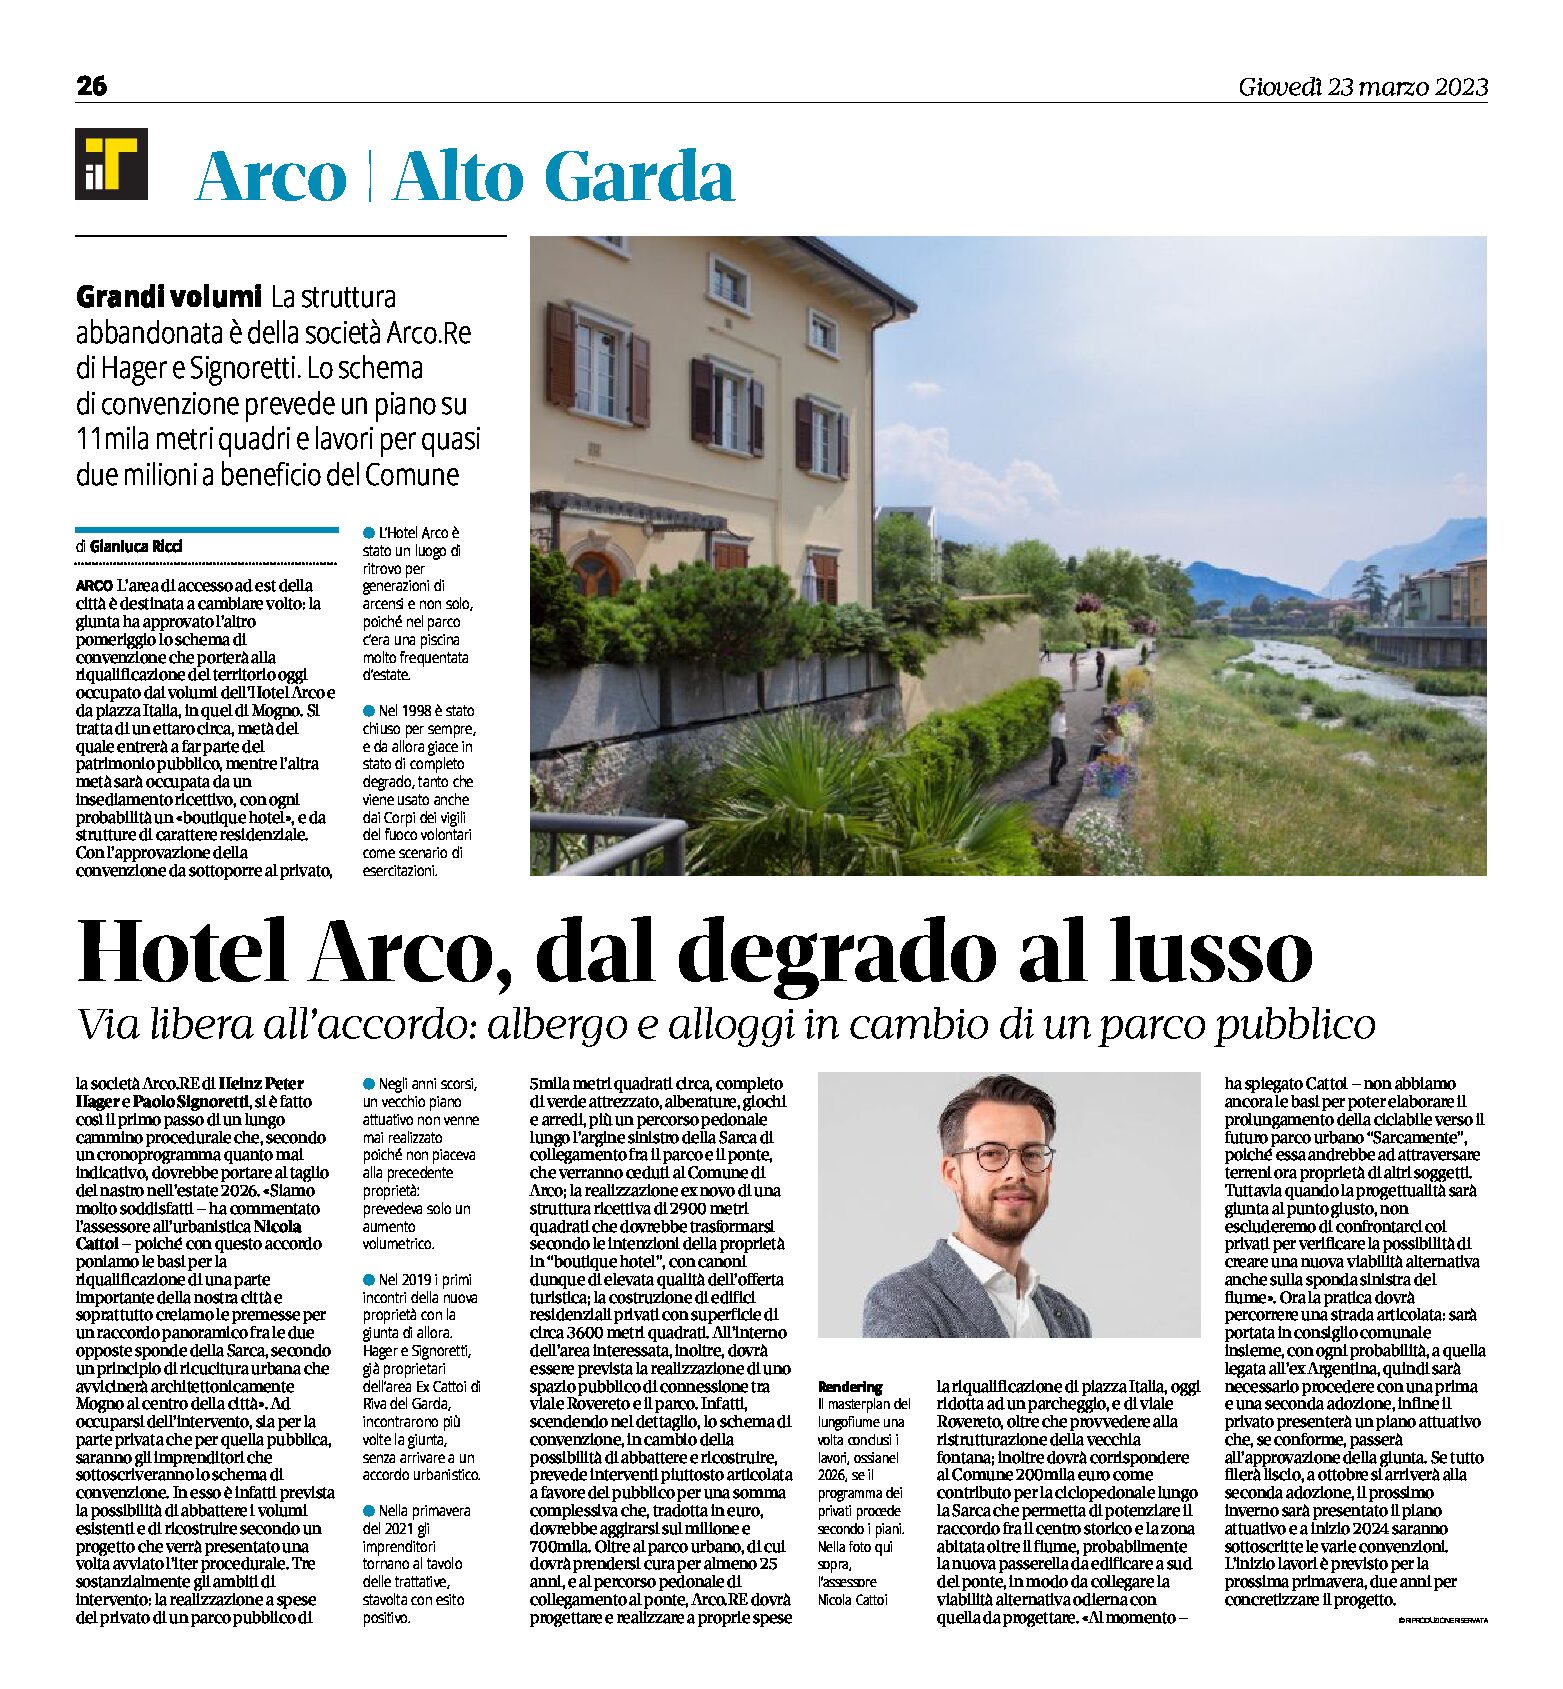 Hotel Arco: dal degrado al lusso